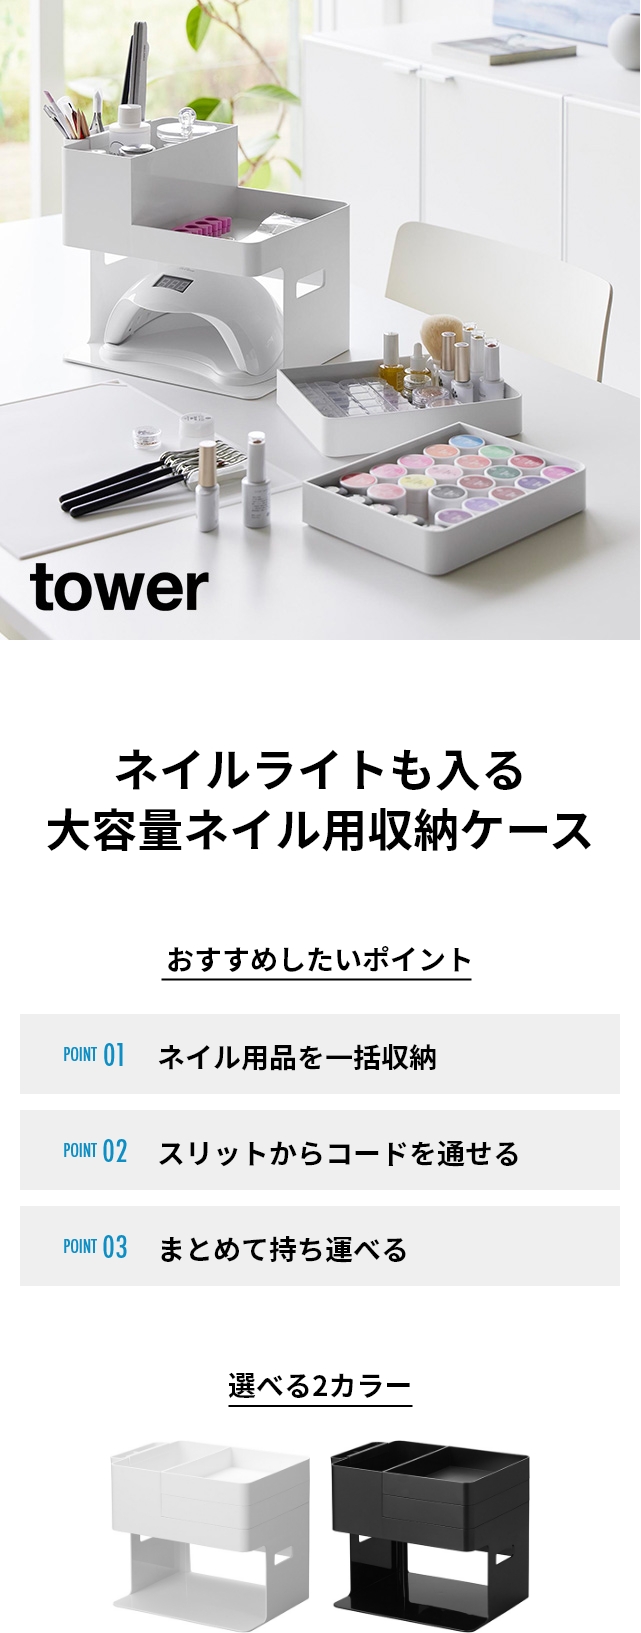 tower（タワー）ネイルライト&ジェルネイル用品収納ケース